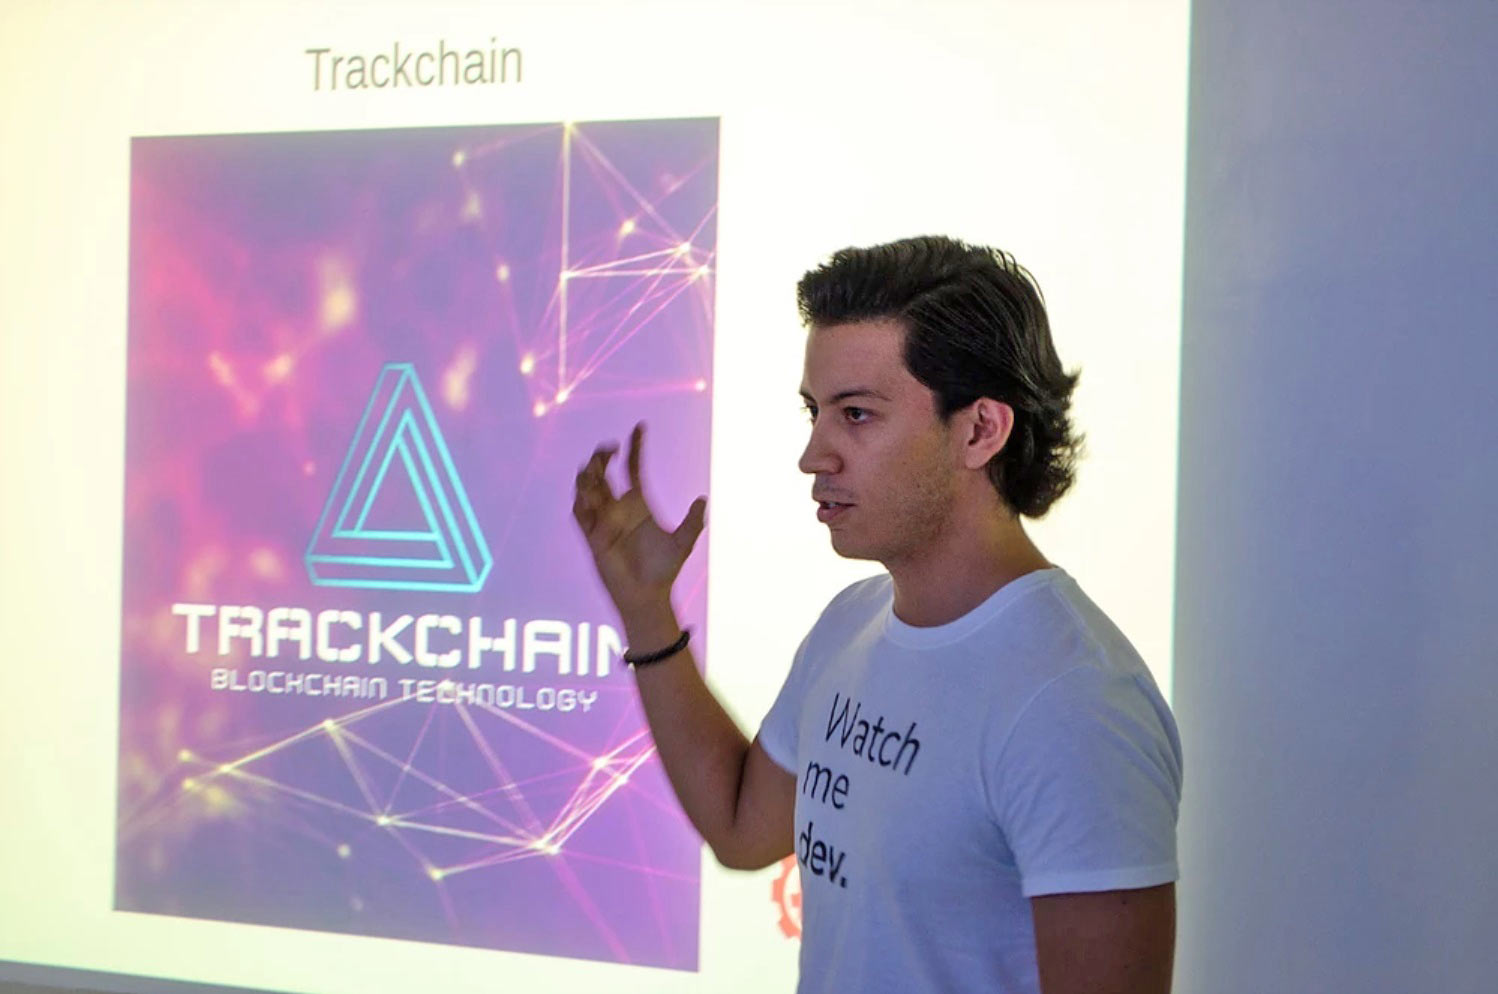 Imanol trabaja con tecnologías emergentes como blockchain.